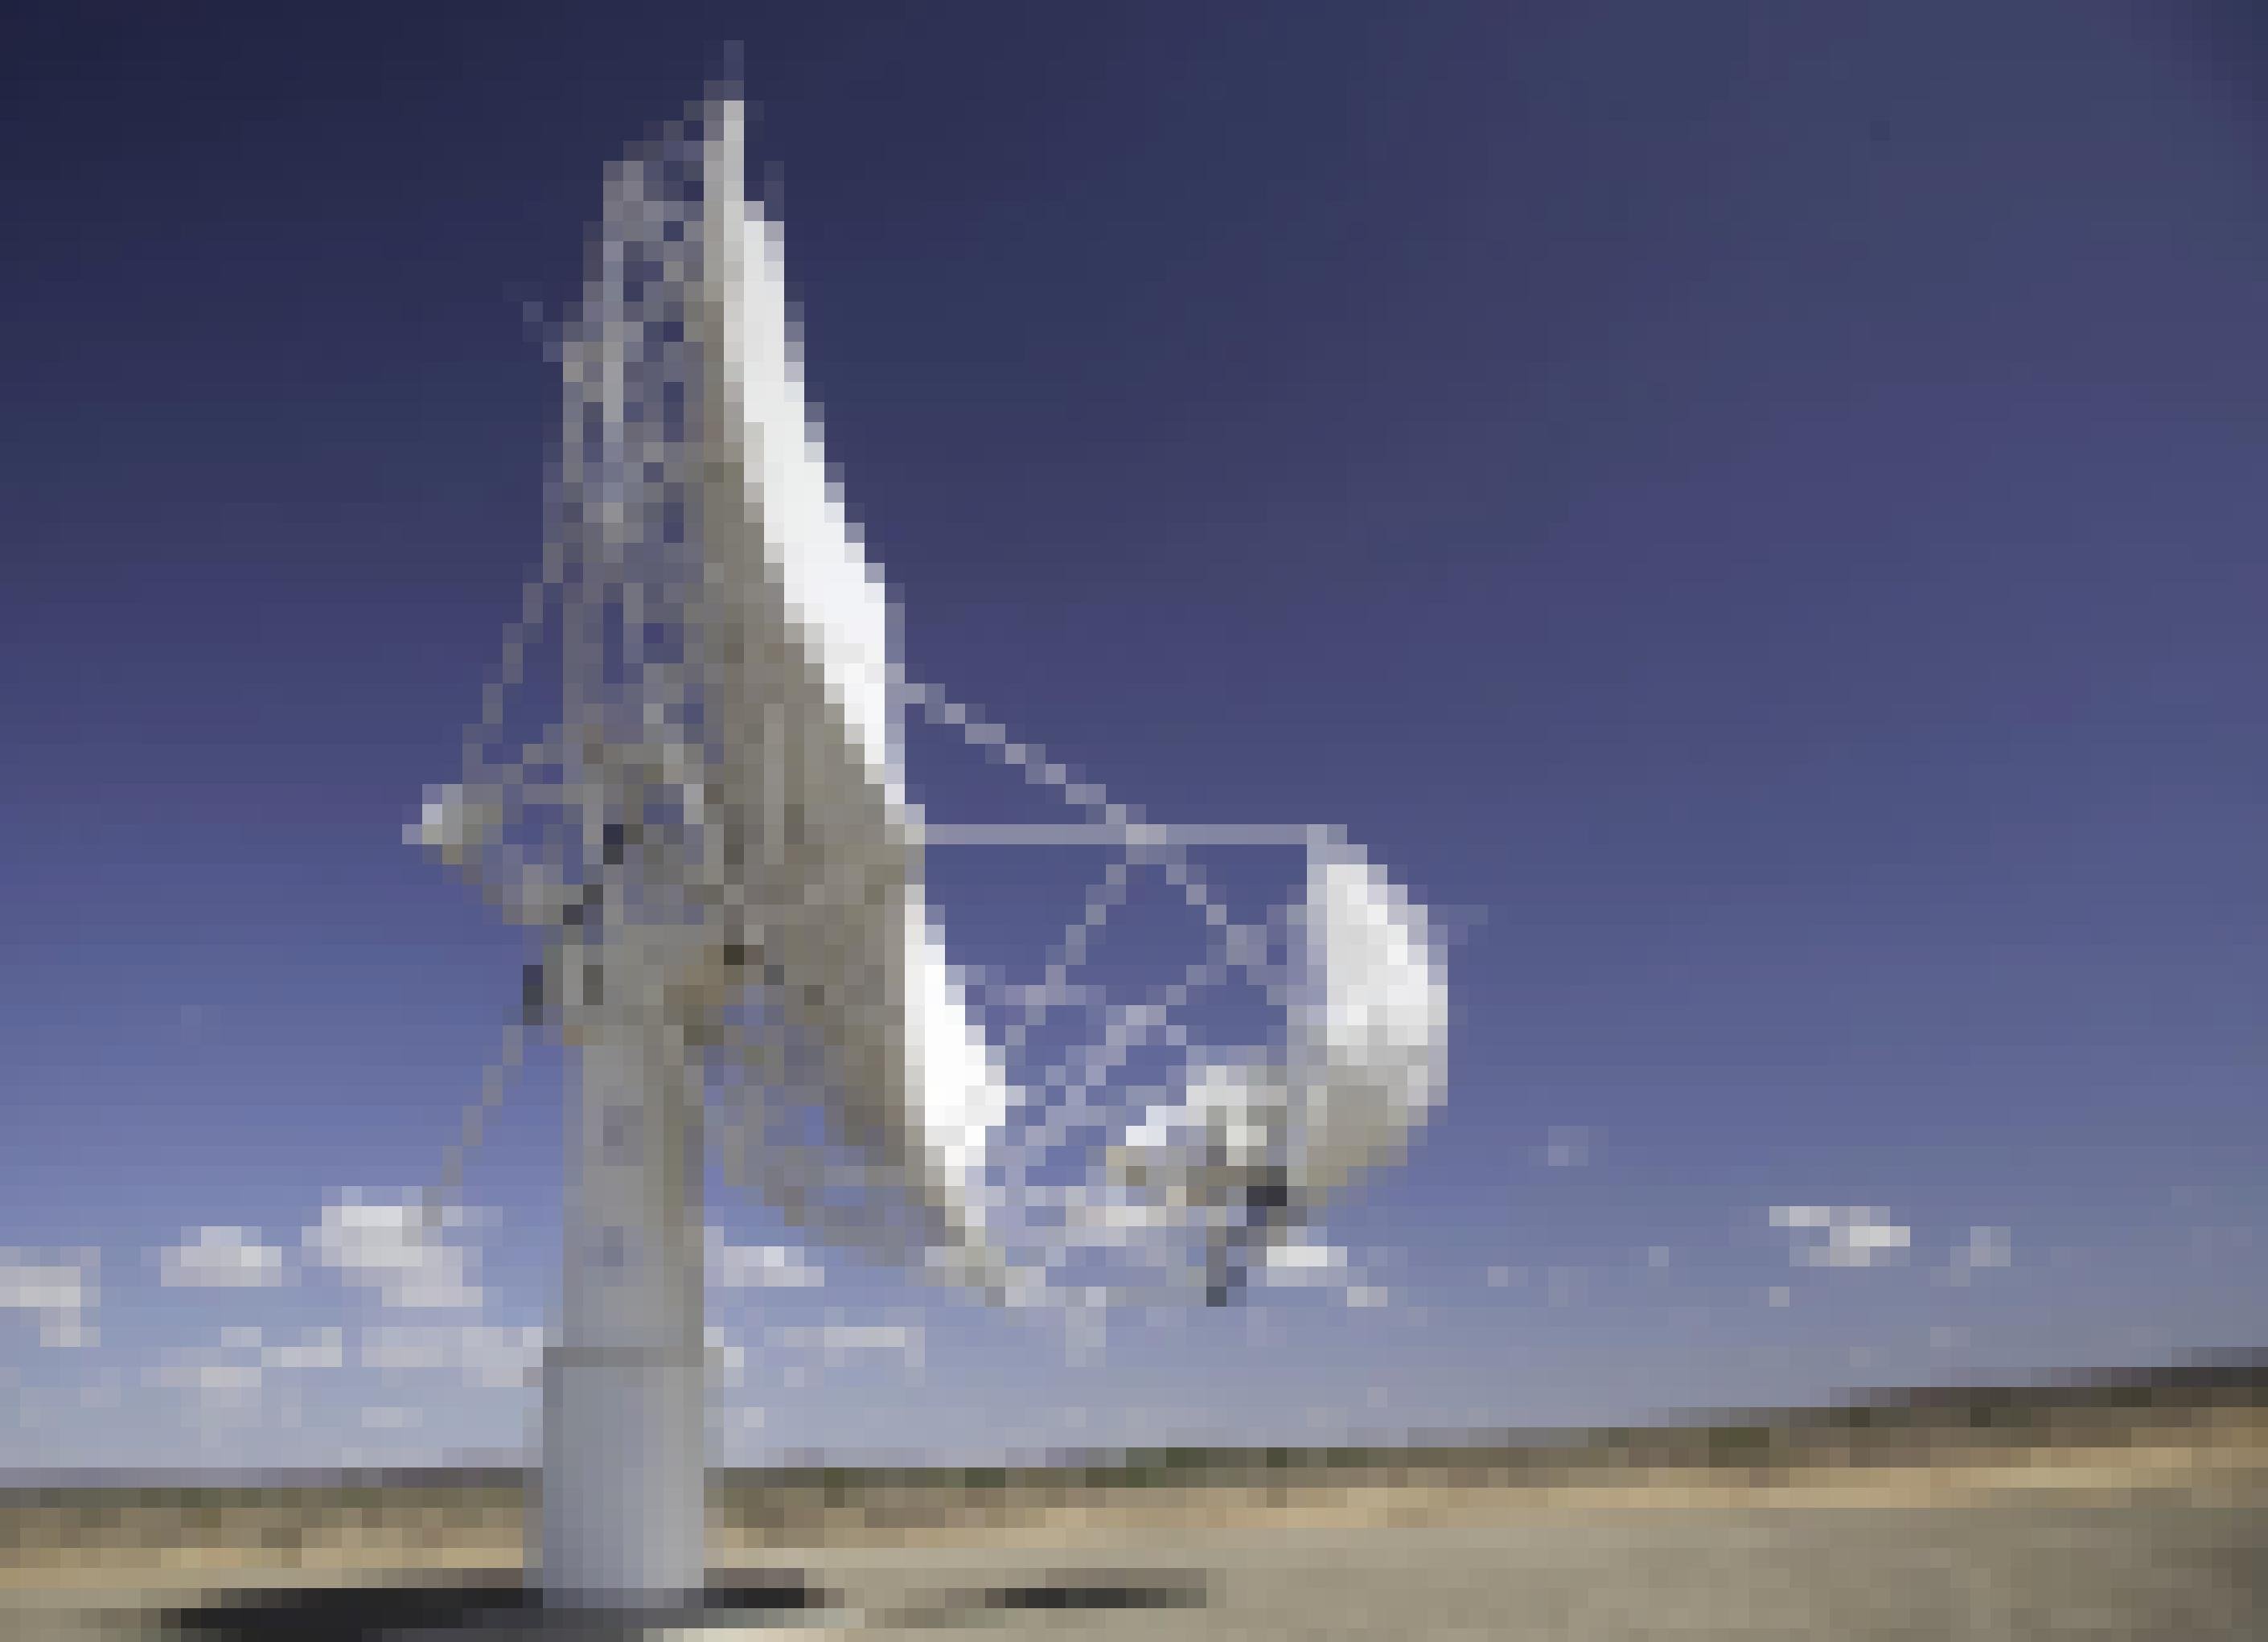 Die Parabolantenne eines Radioteleskops steht in einer Wüstenlandschaft.